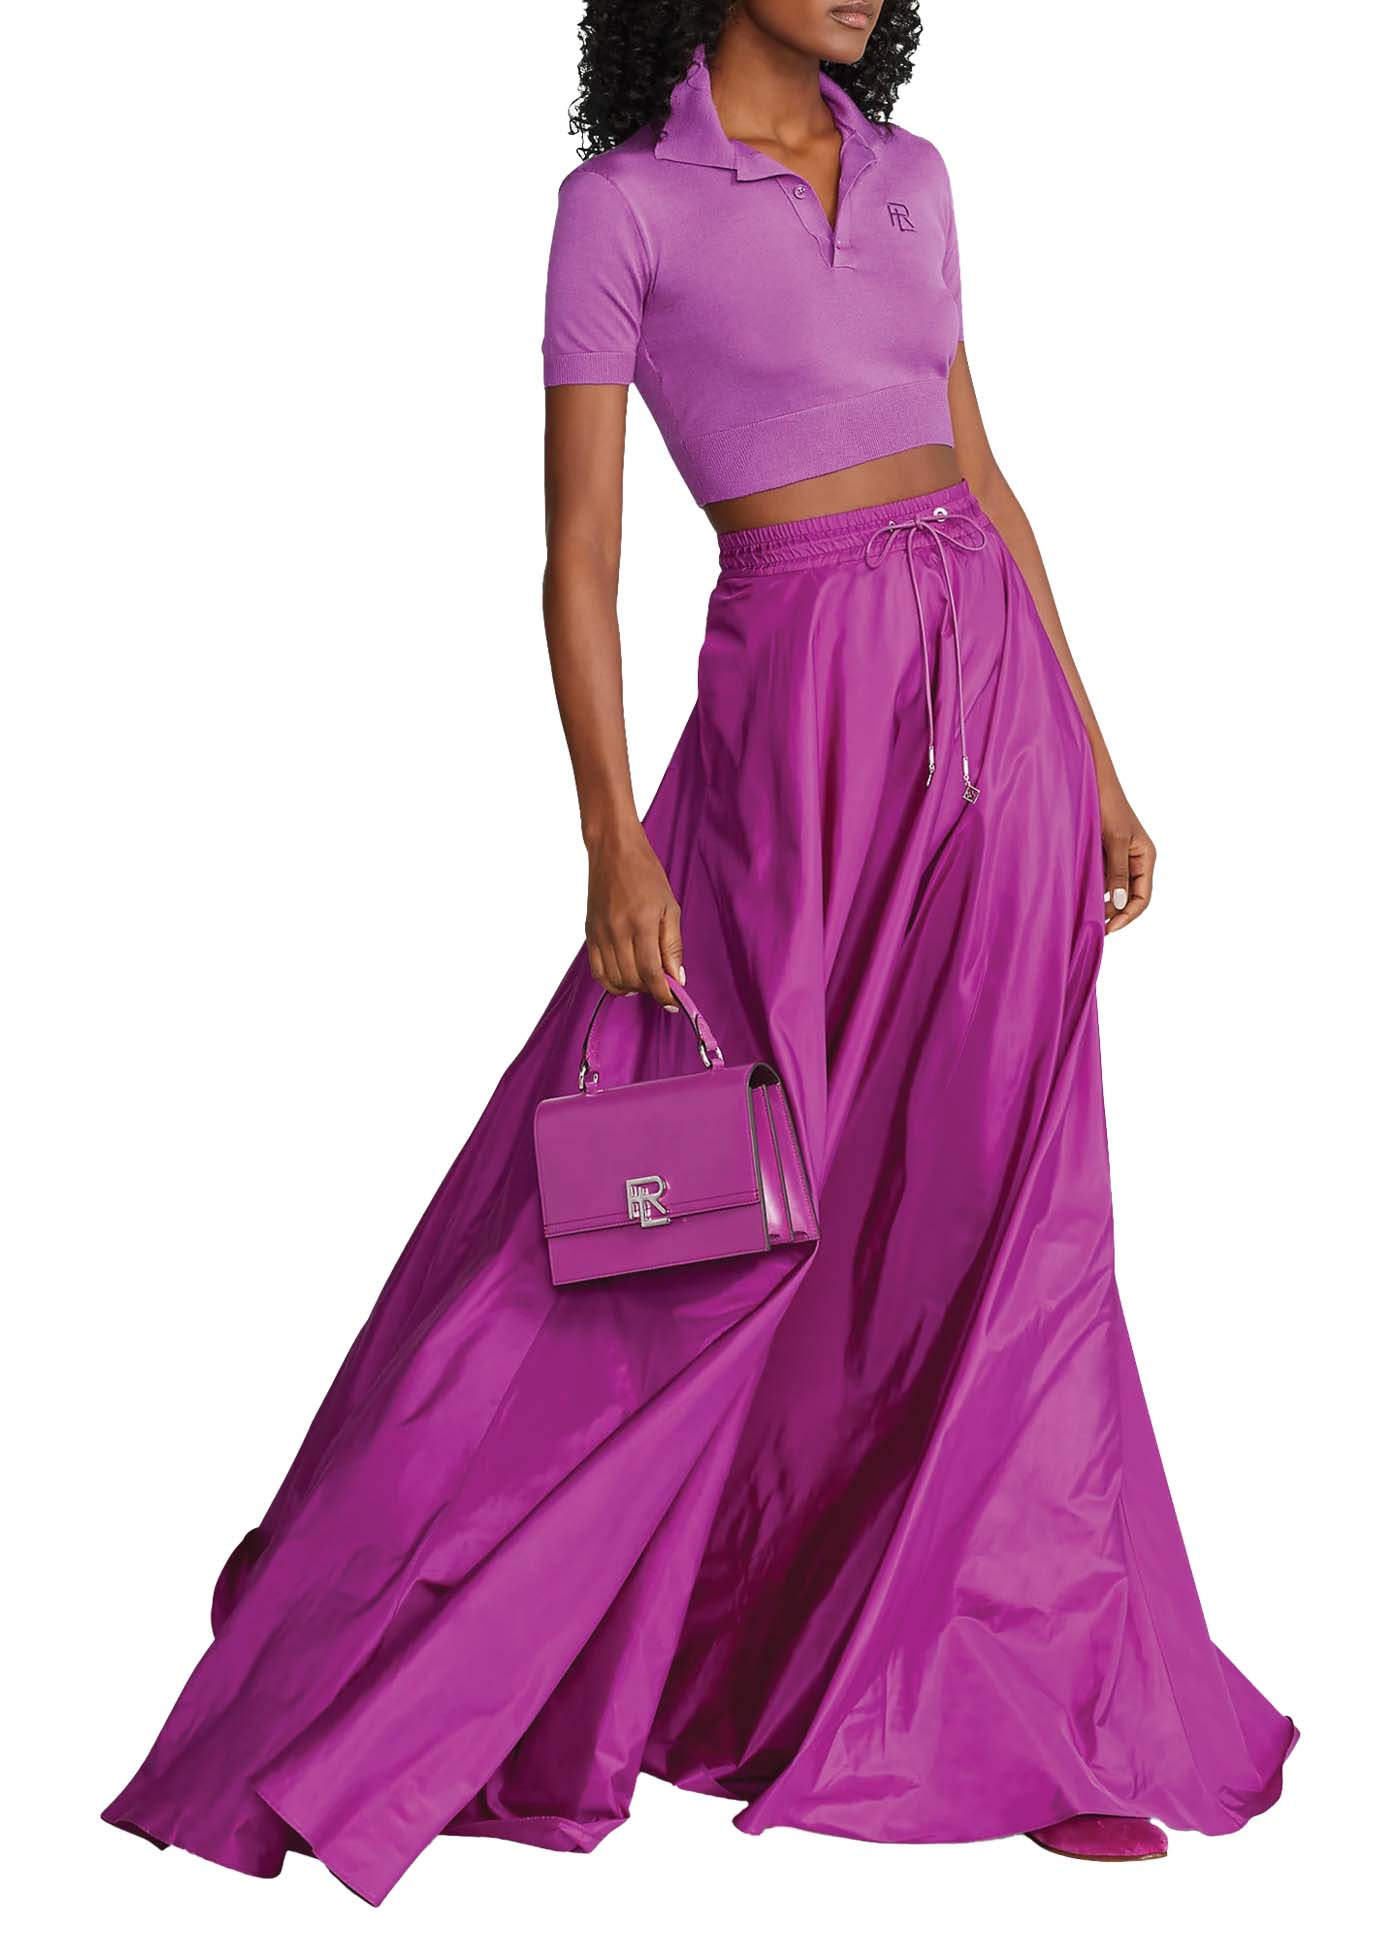 40 Ralph Lauren Collection Emilien Silk Taffeta Skirt $2,890 Bergdorfgoodman.com